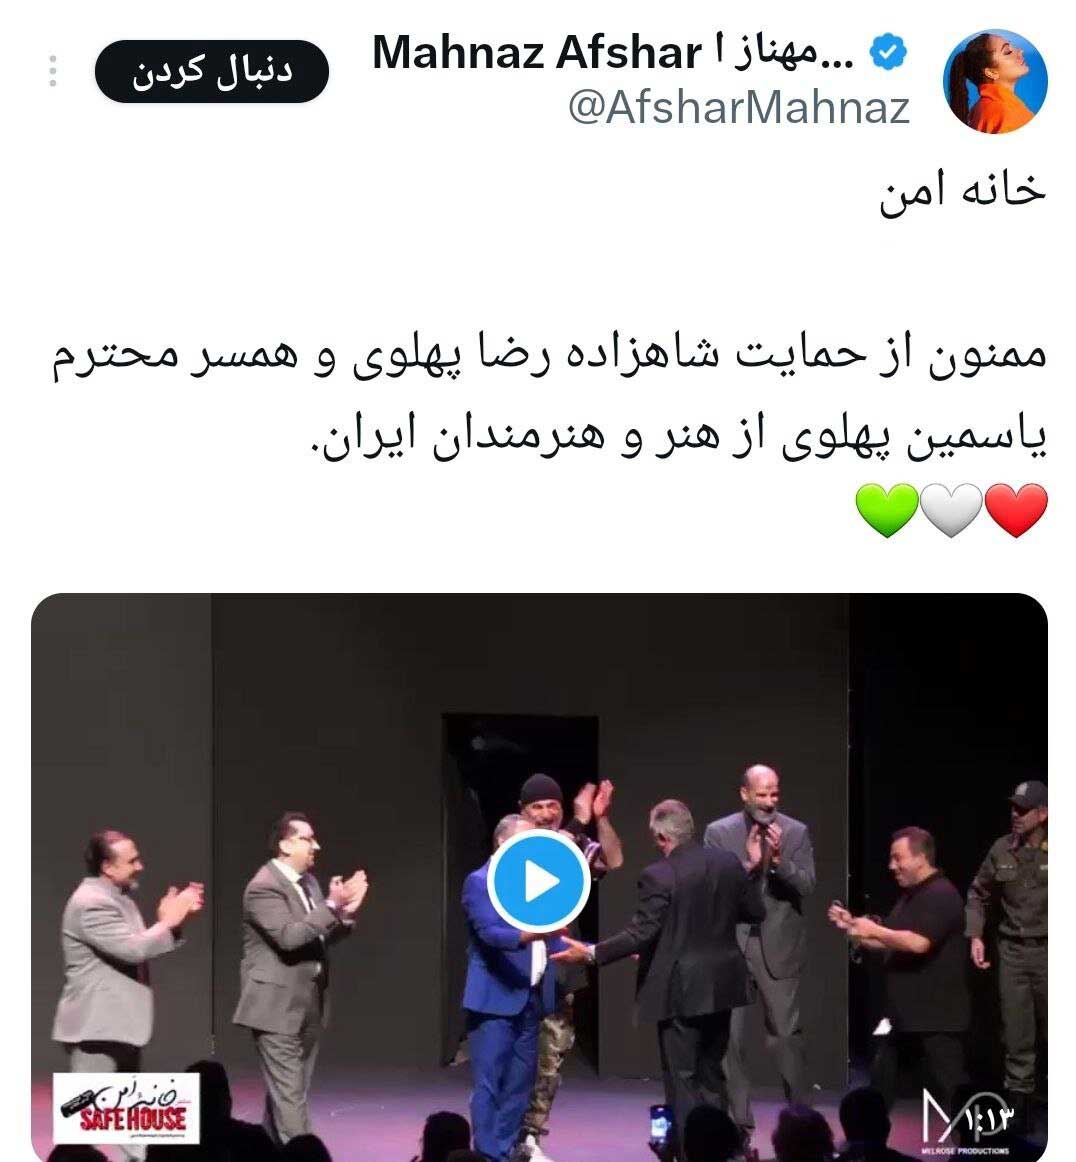 خشم رسانه شهرداری از توئیت جنجالی مهناز افشار